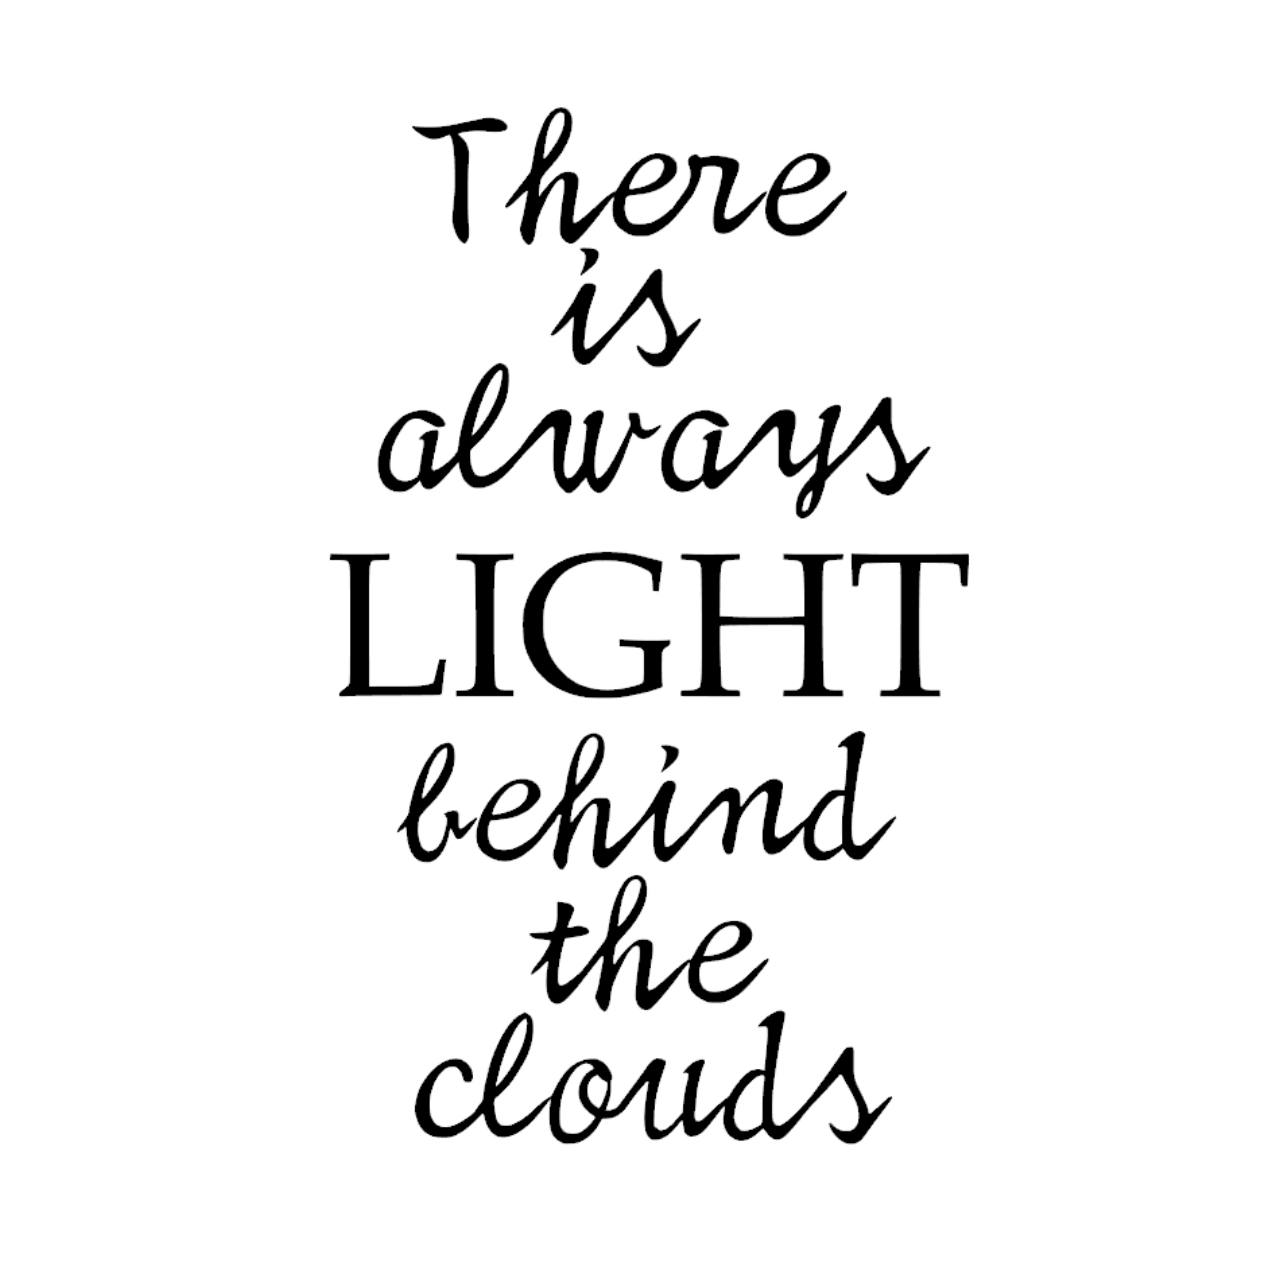 ウォールステッカー 名言 There Is Light Behind The Clouds 黒 光沢 ルイーザ メイ オルコット Iby アイバイ ウォールステッカー 通販